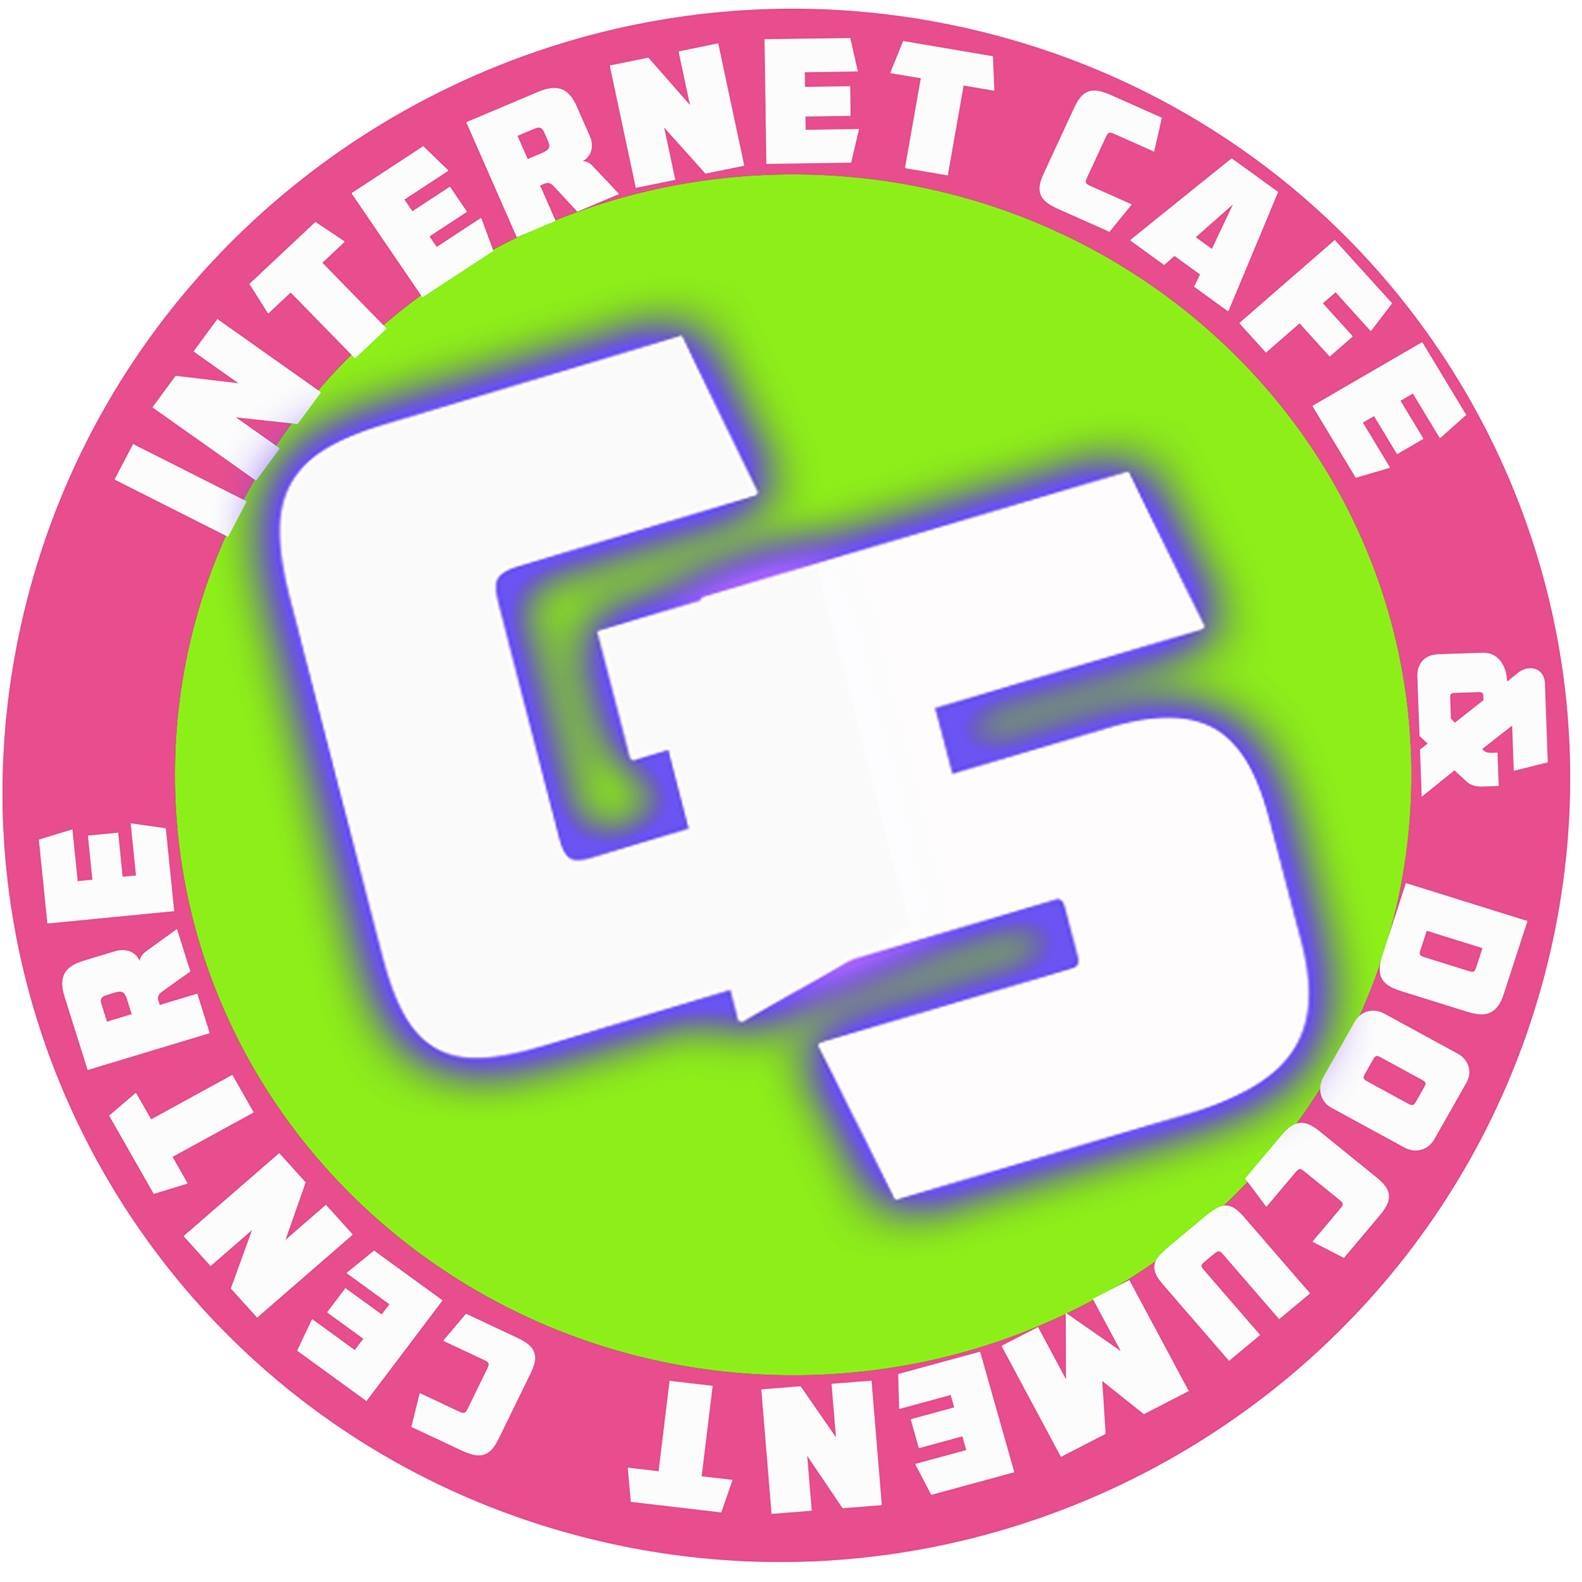 G5 Internet Café